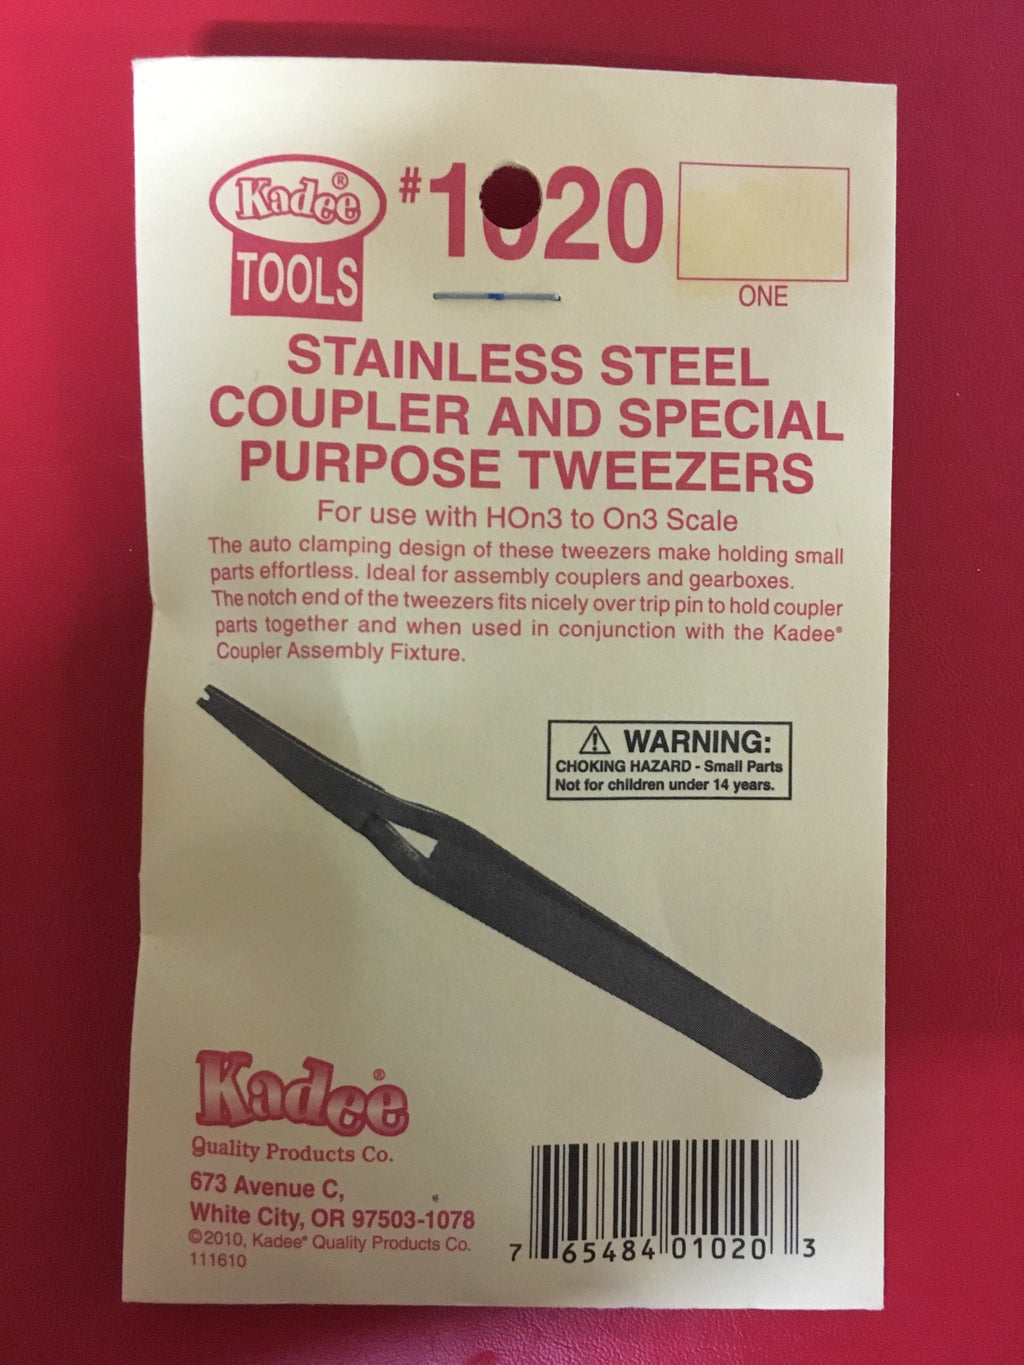 #1020 Coupler & Special Purpose Tweezers